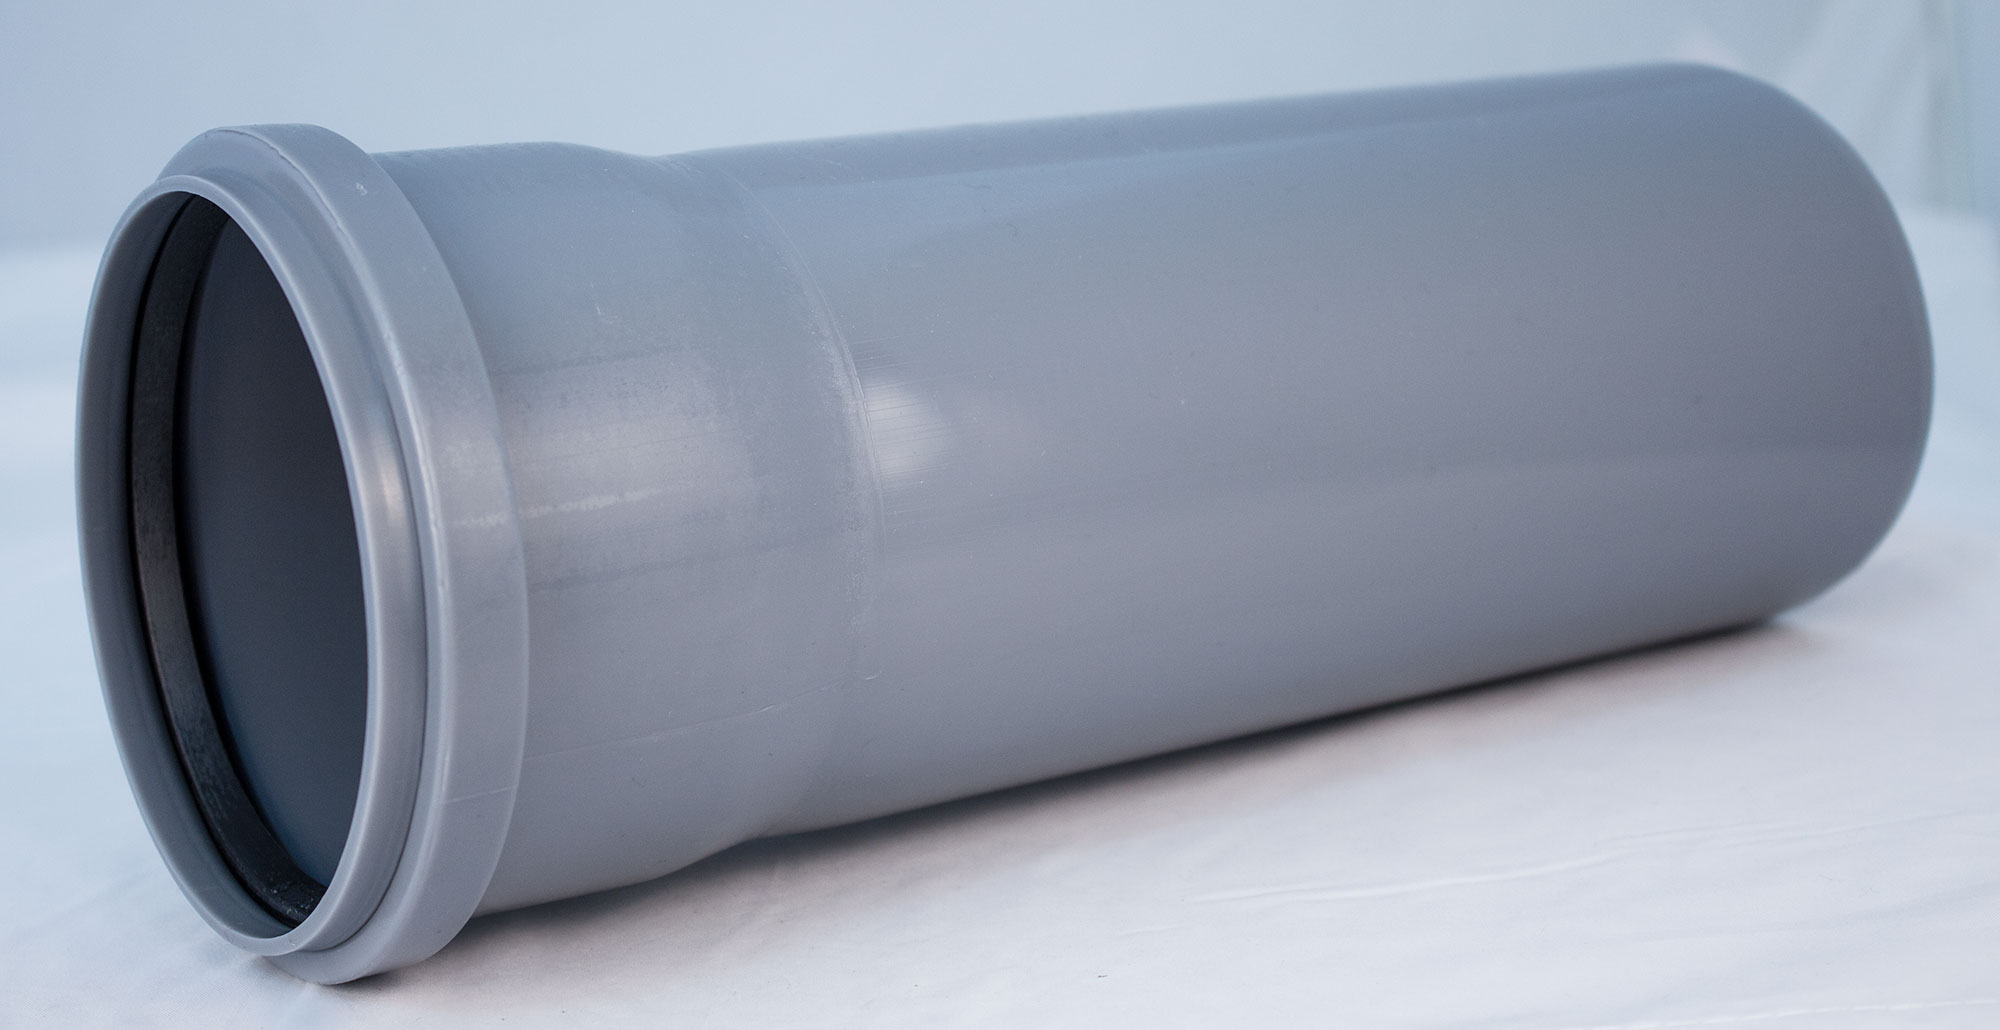 Технические характеристики пластиковой трубы для канализации диаметром 100 мм